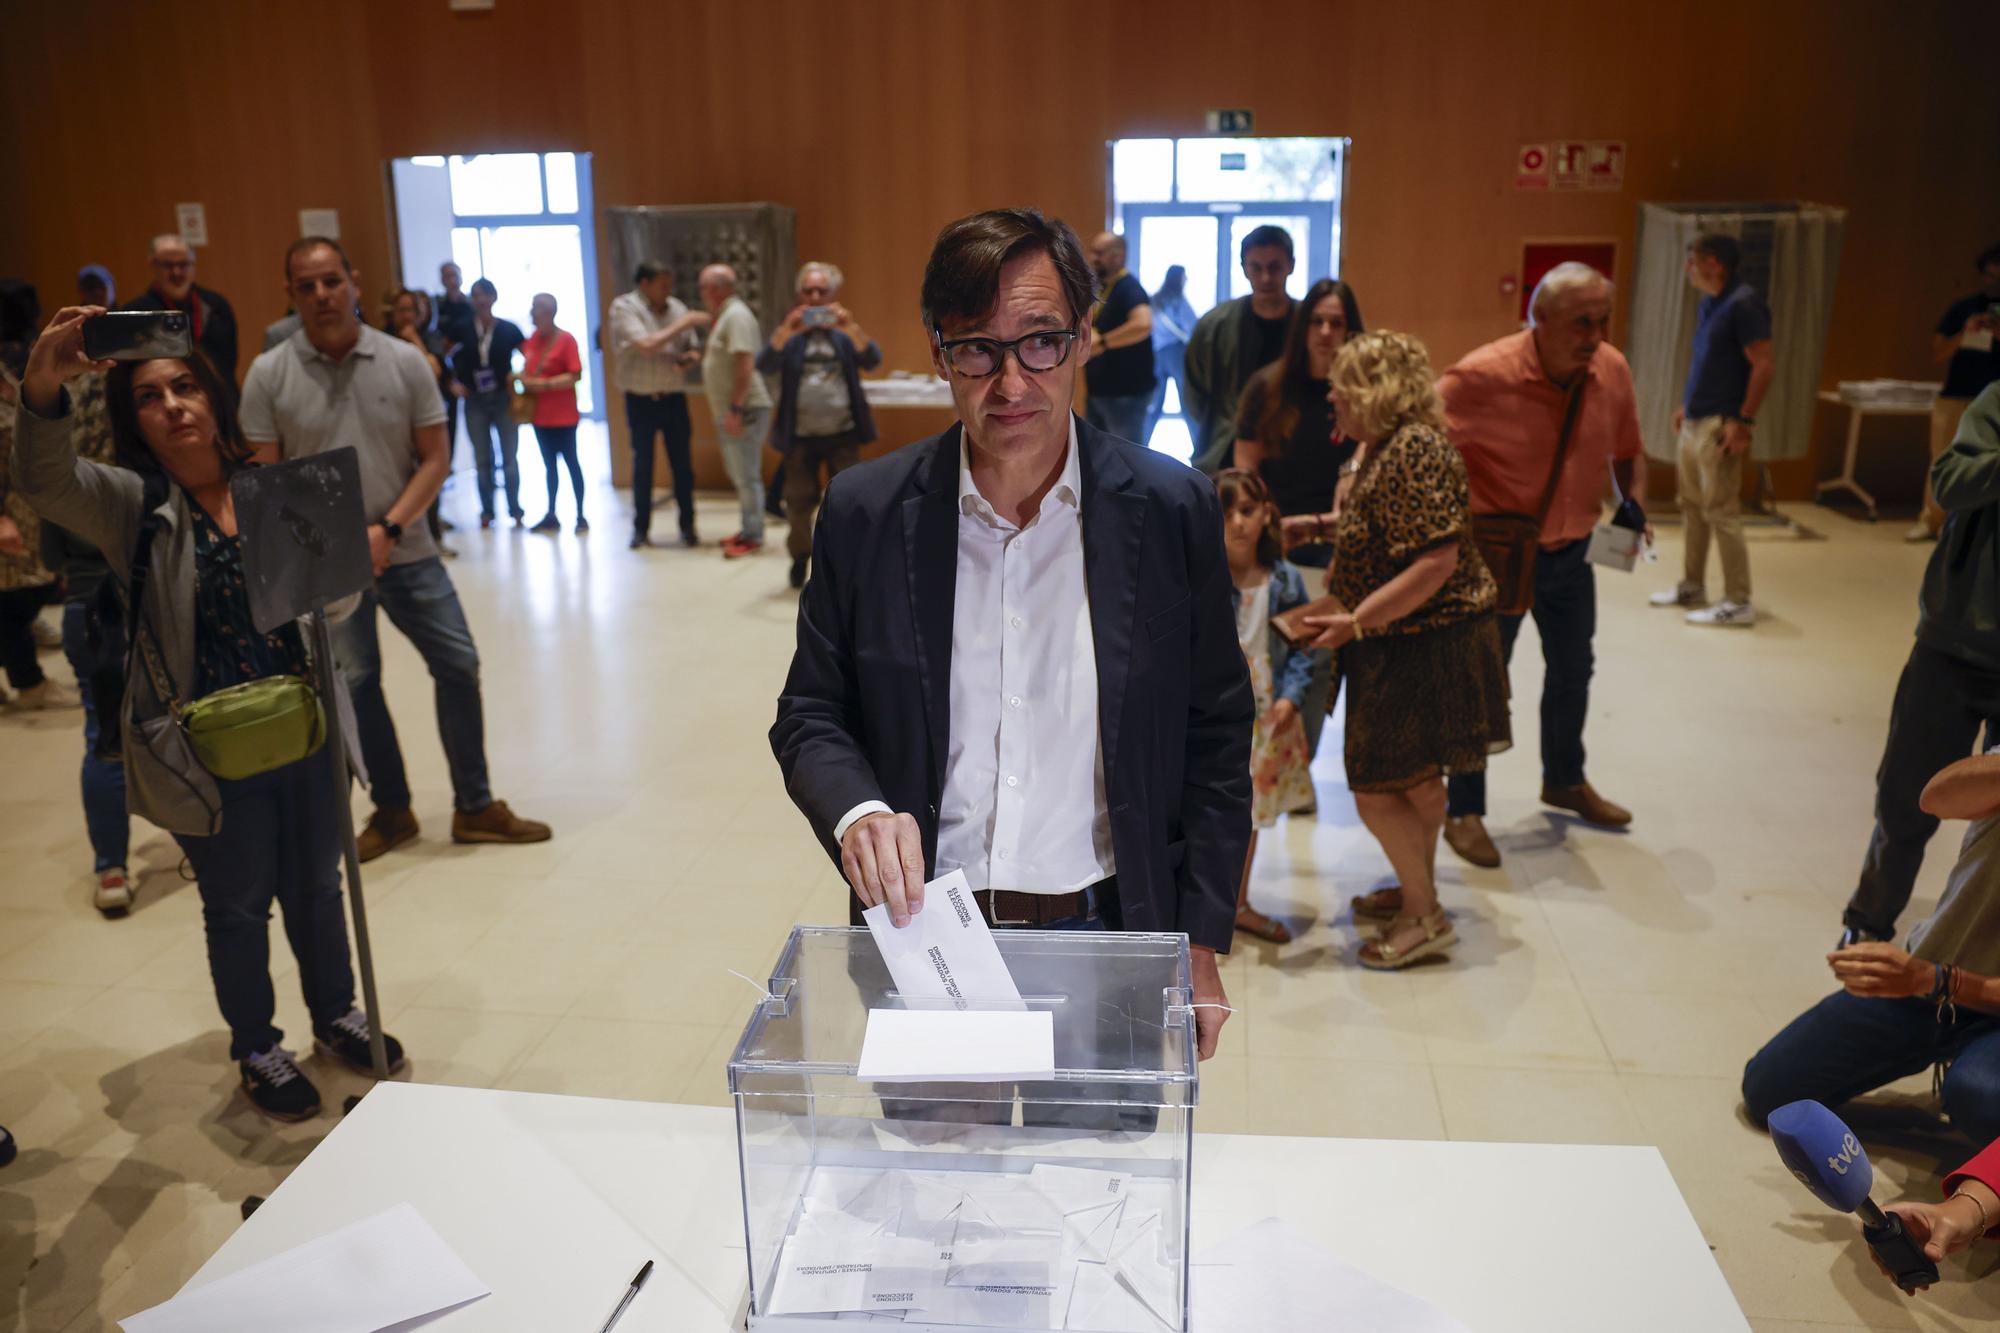 Jornada electoral en Cataluña. Votación de Salvador Illa